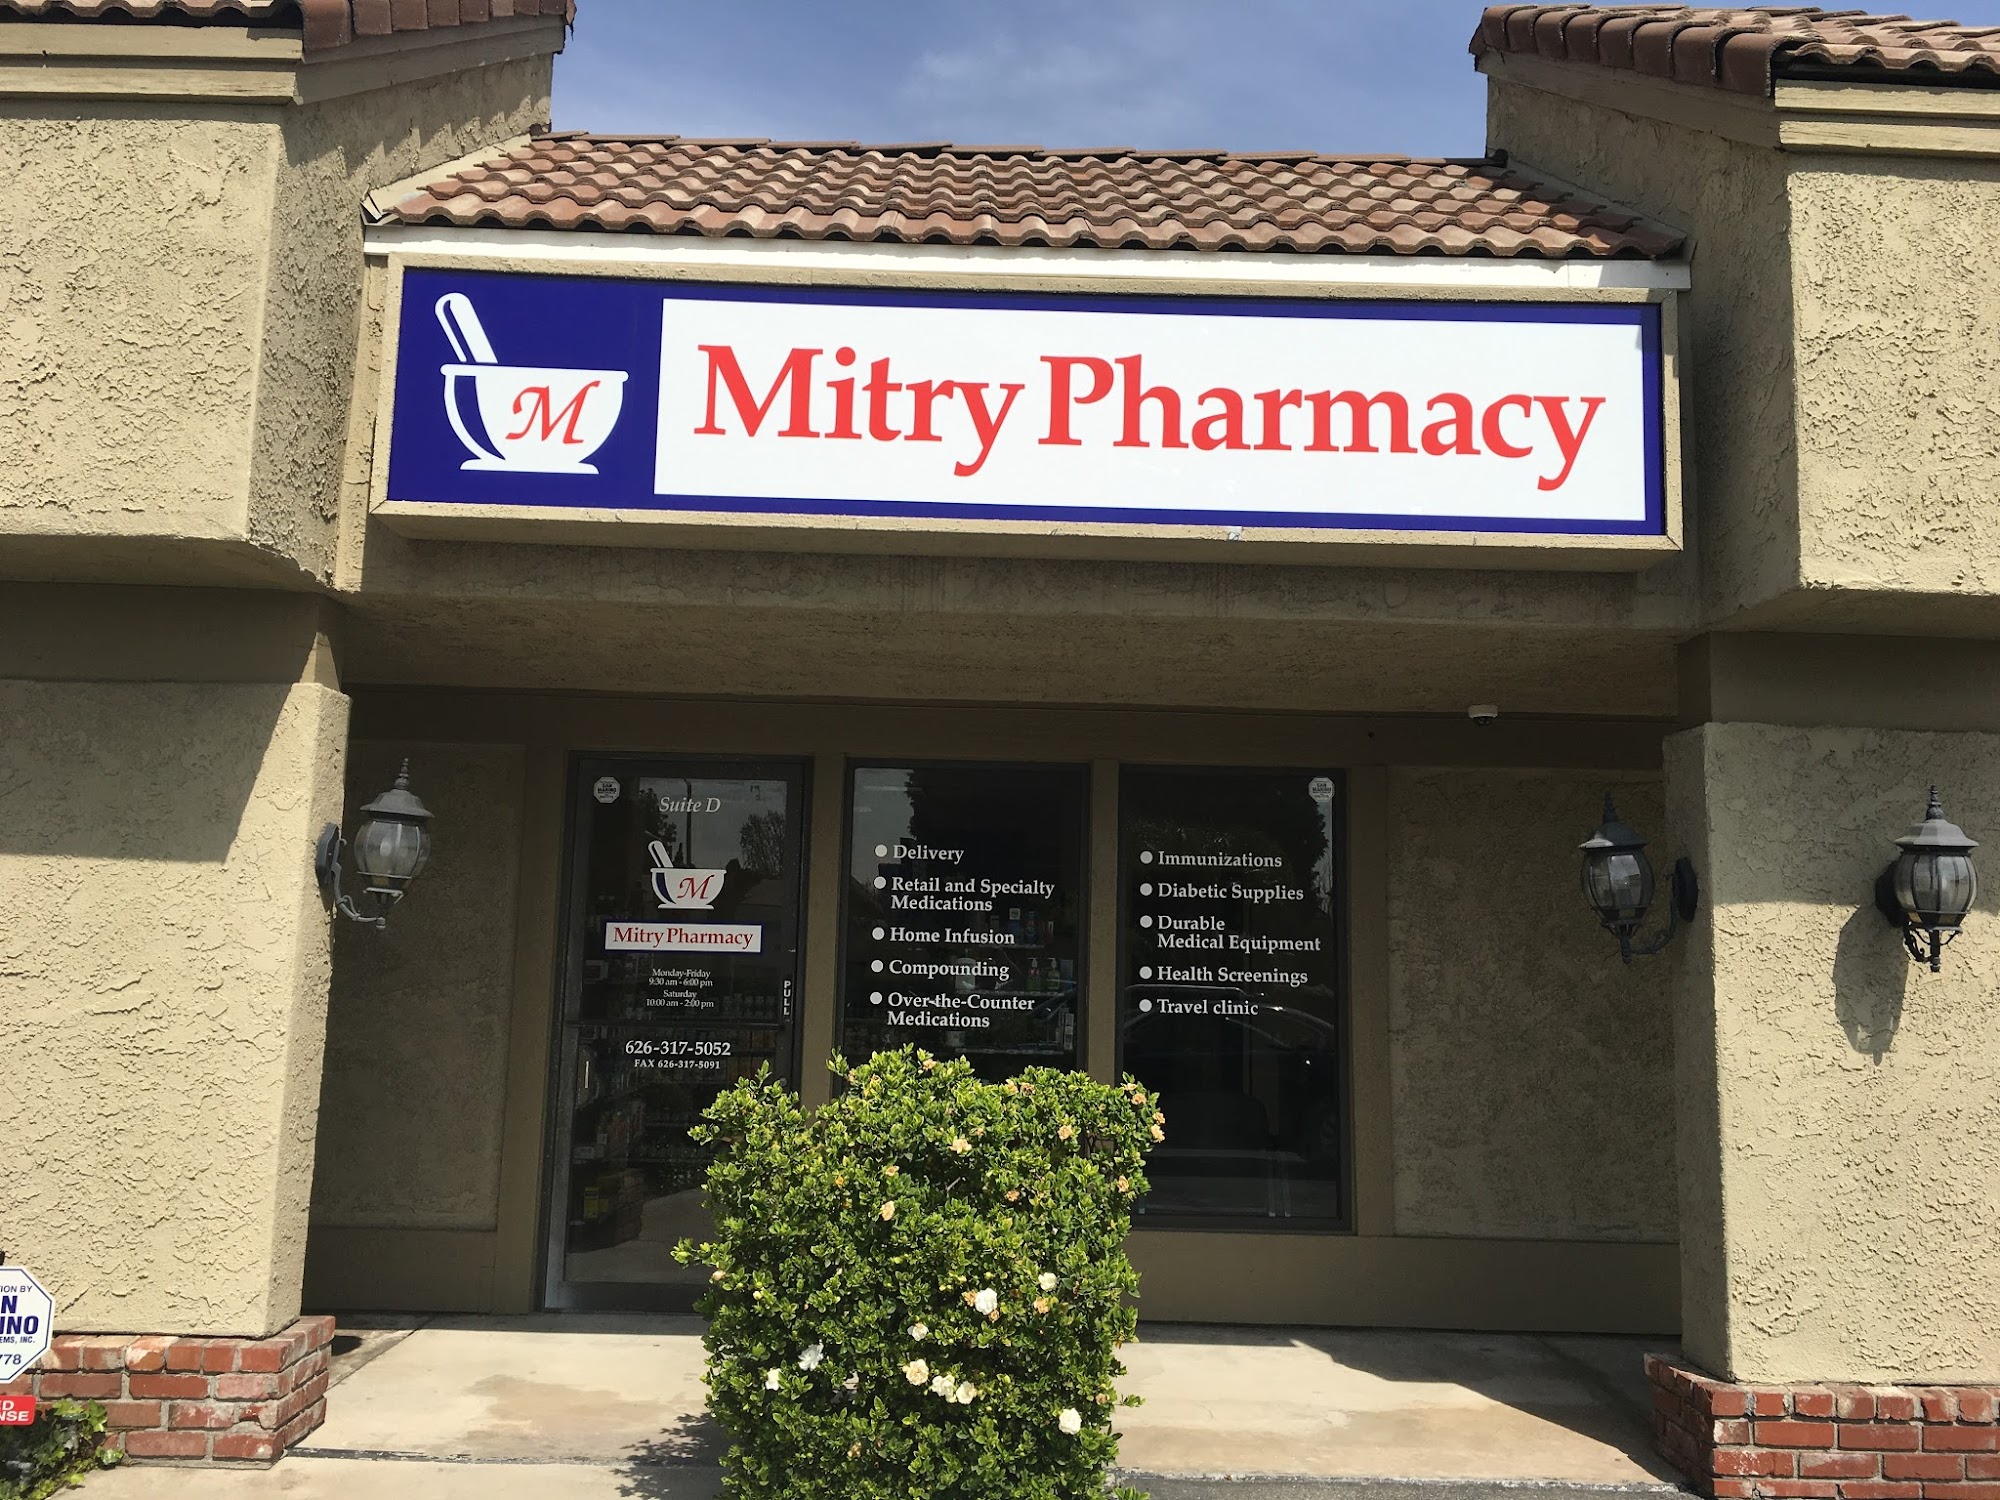 Mitry Pharmacy